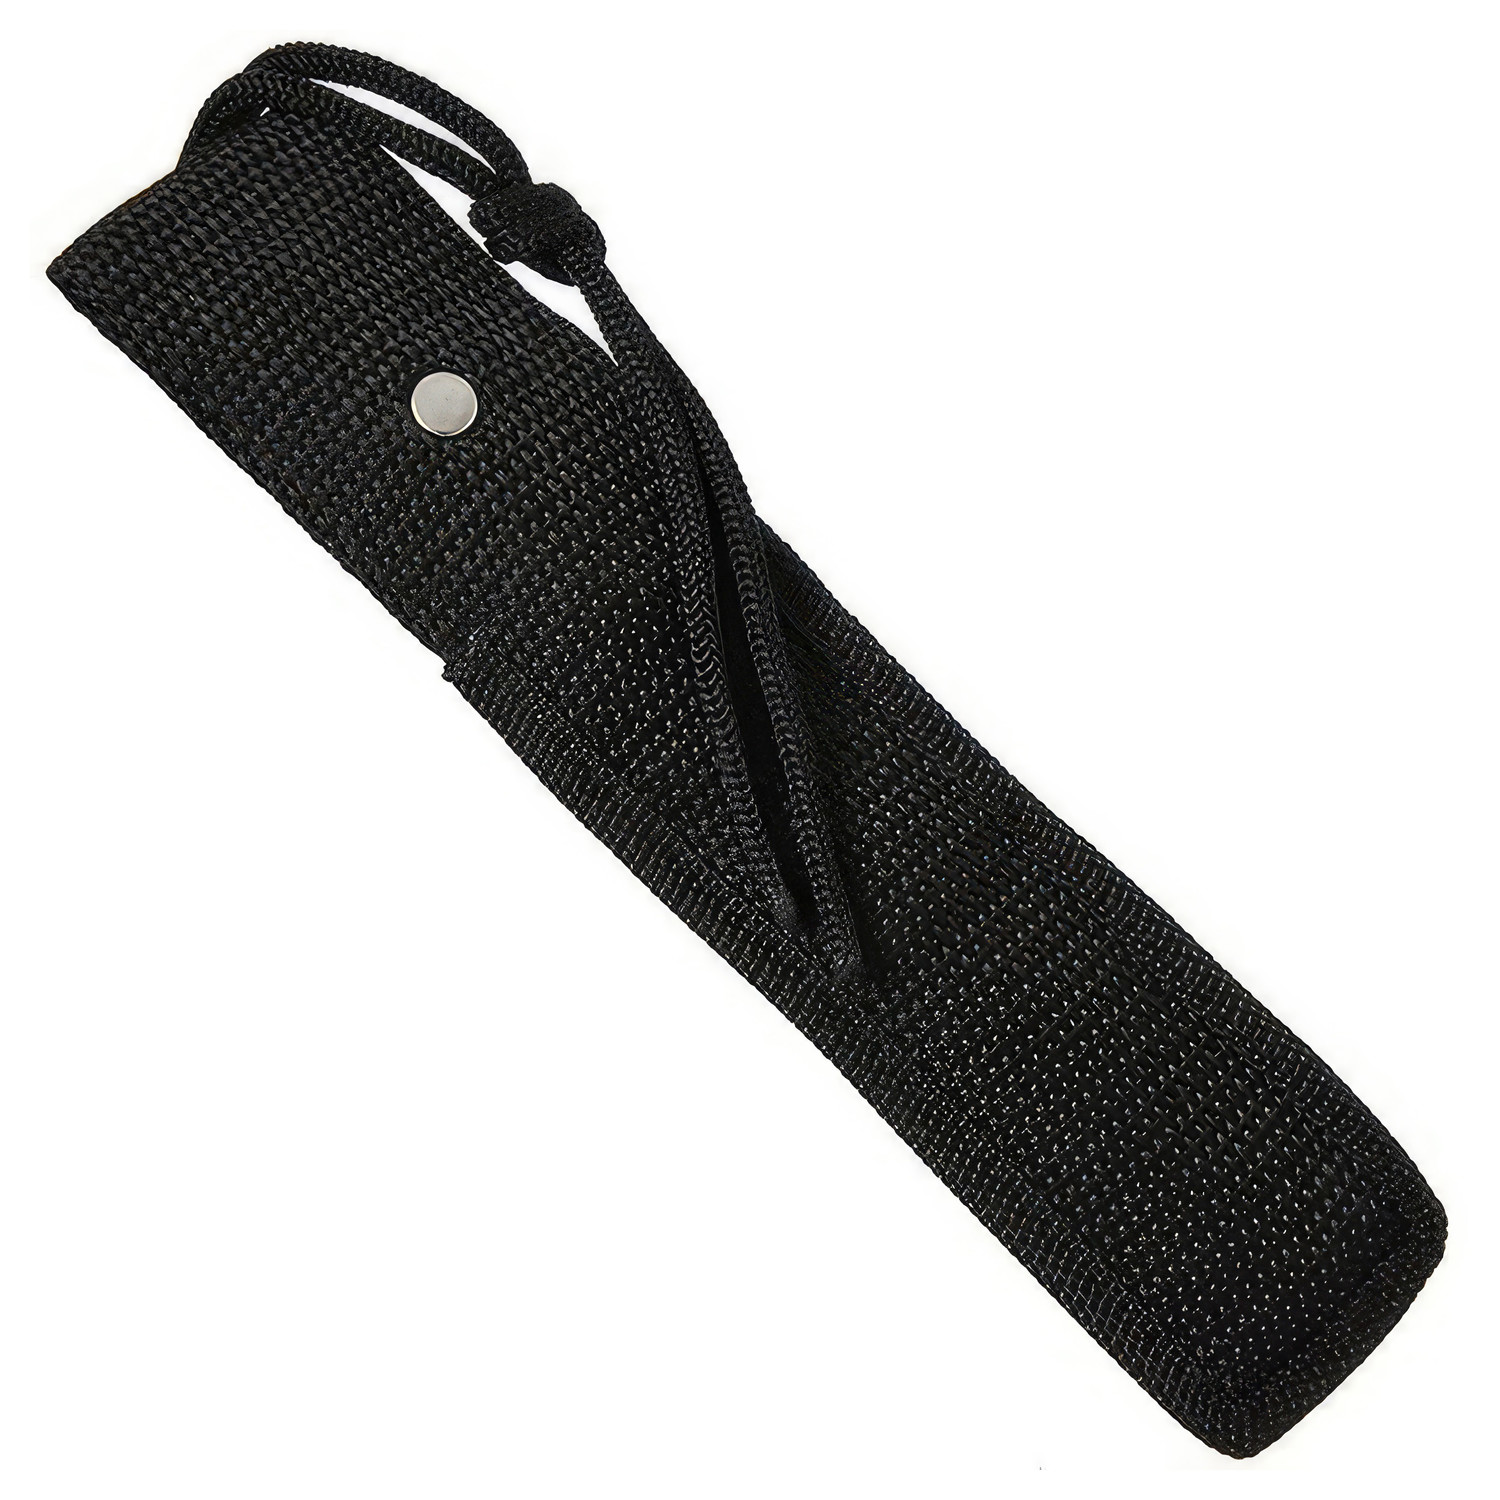 Outdoormesser 10 cm Klinge mit schwarz umwickeltem Griff - Simigu